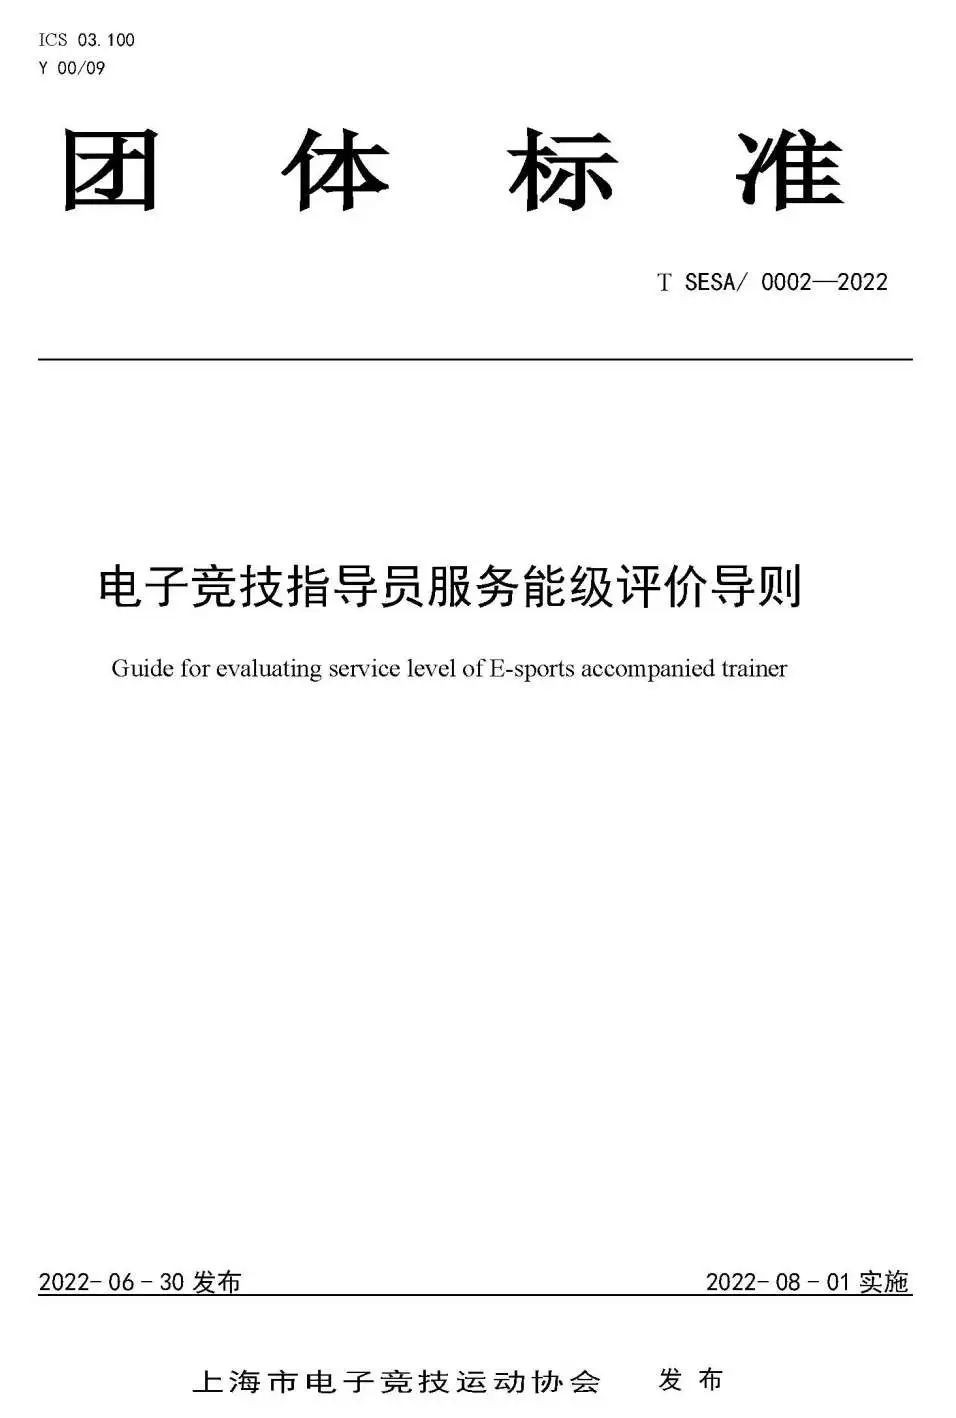 上海推出《电子竞技指导员管理规范》，电竞指导服务有标准可依